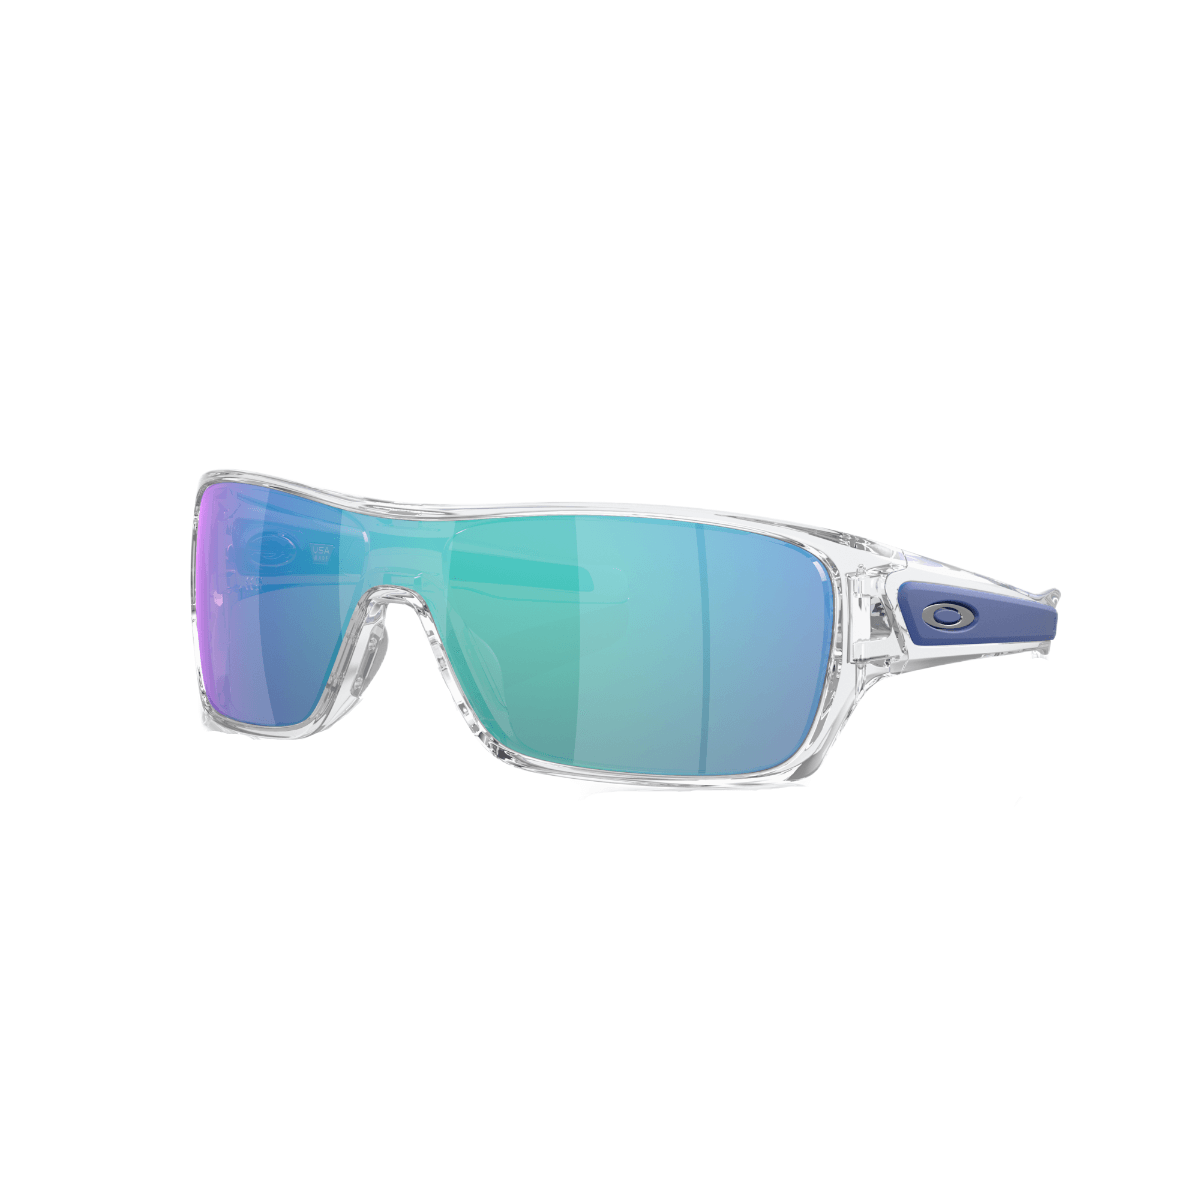 Rotor Sunglasses - Als.com